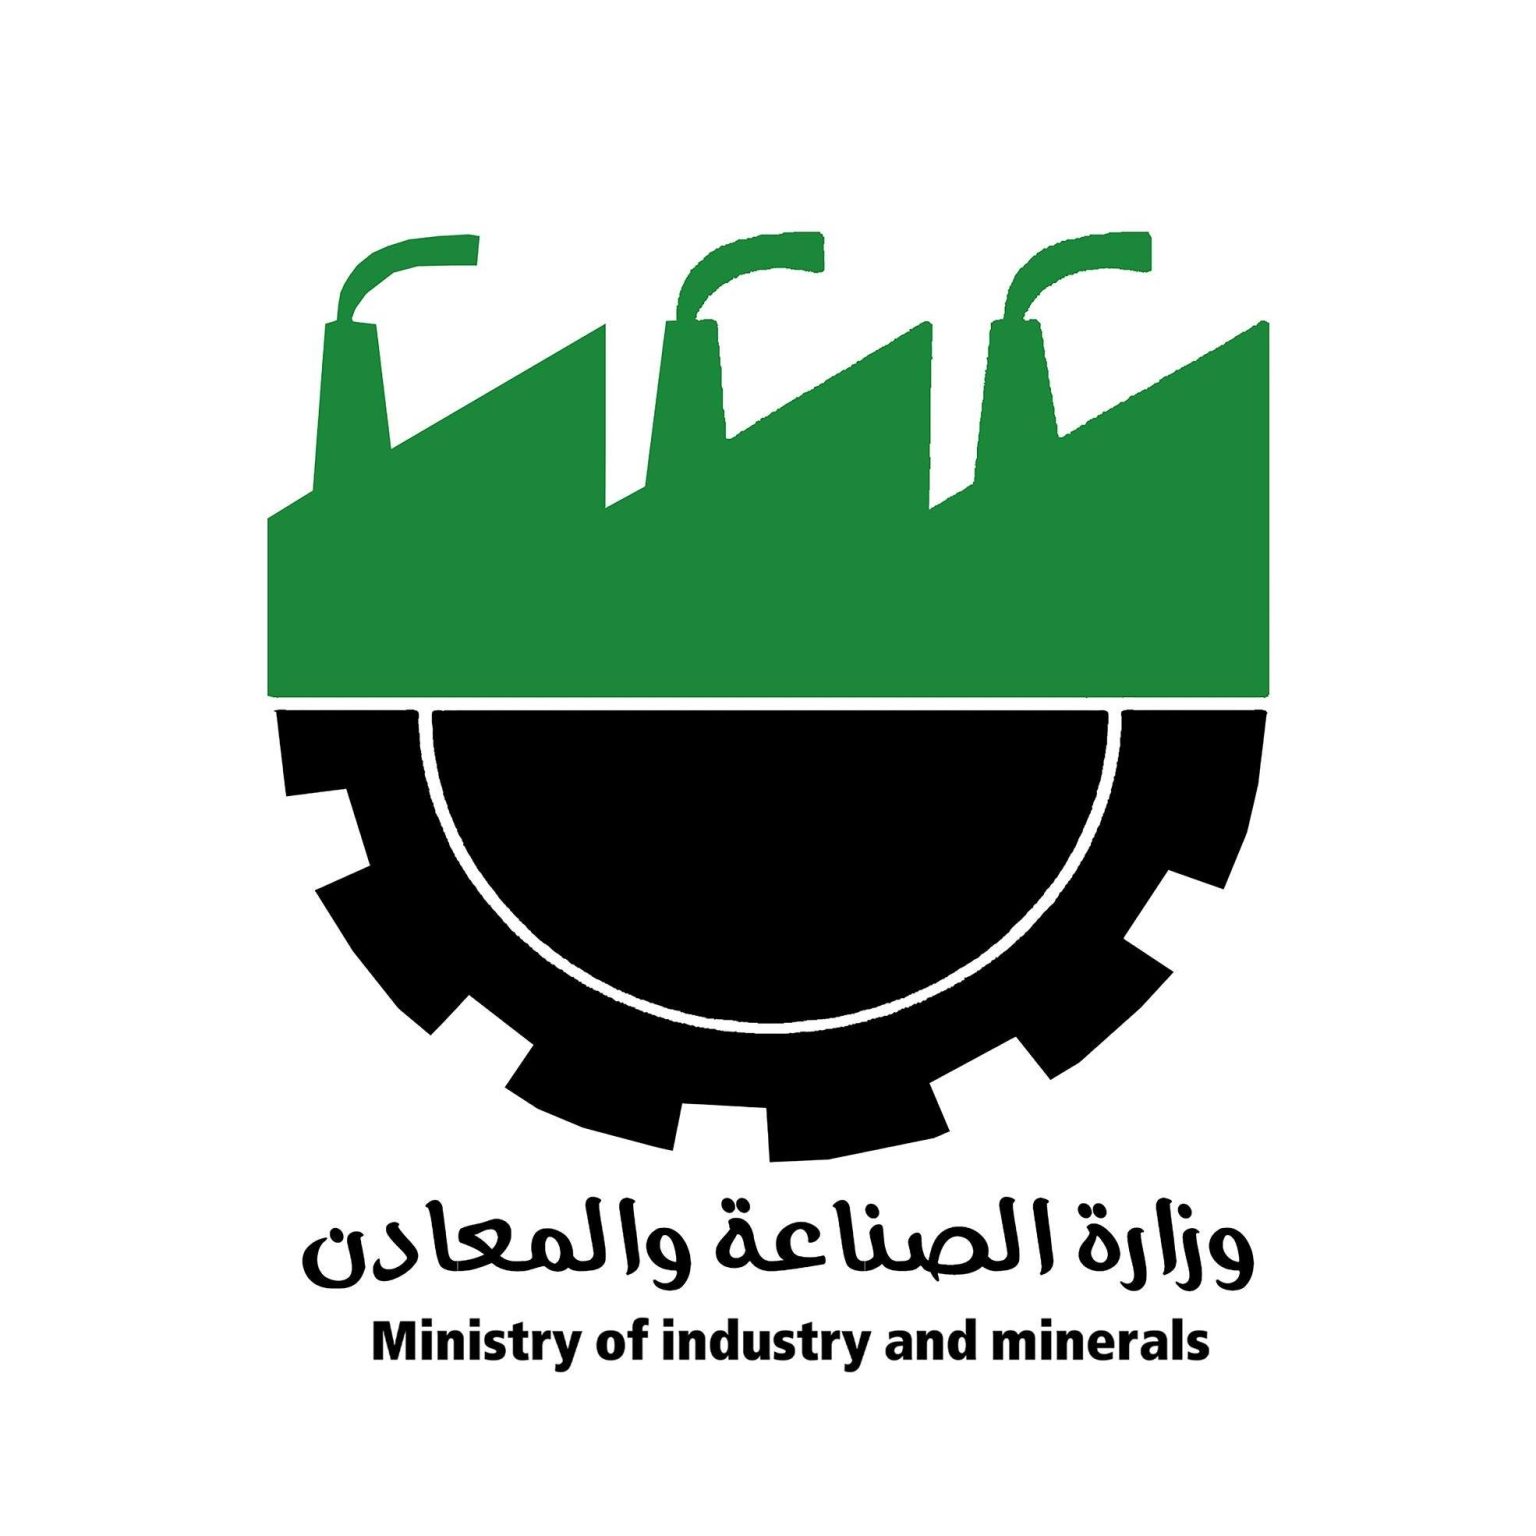 العراق يوقع عقدًا مع شركة سعودية لتصنيع منظومات الري الحديثة